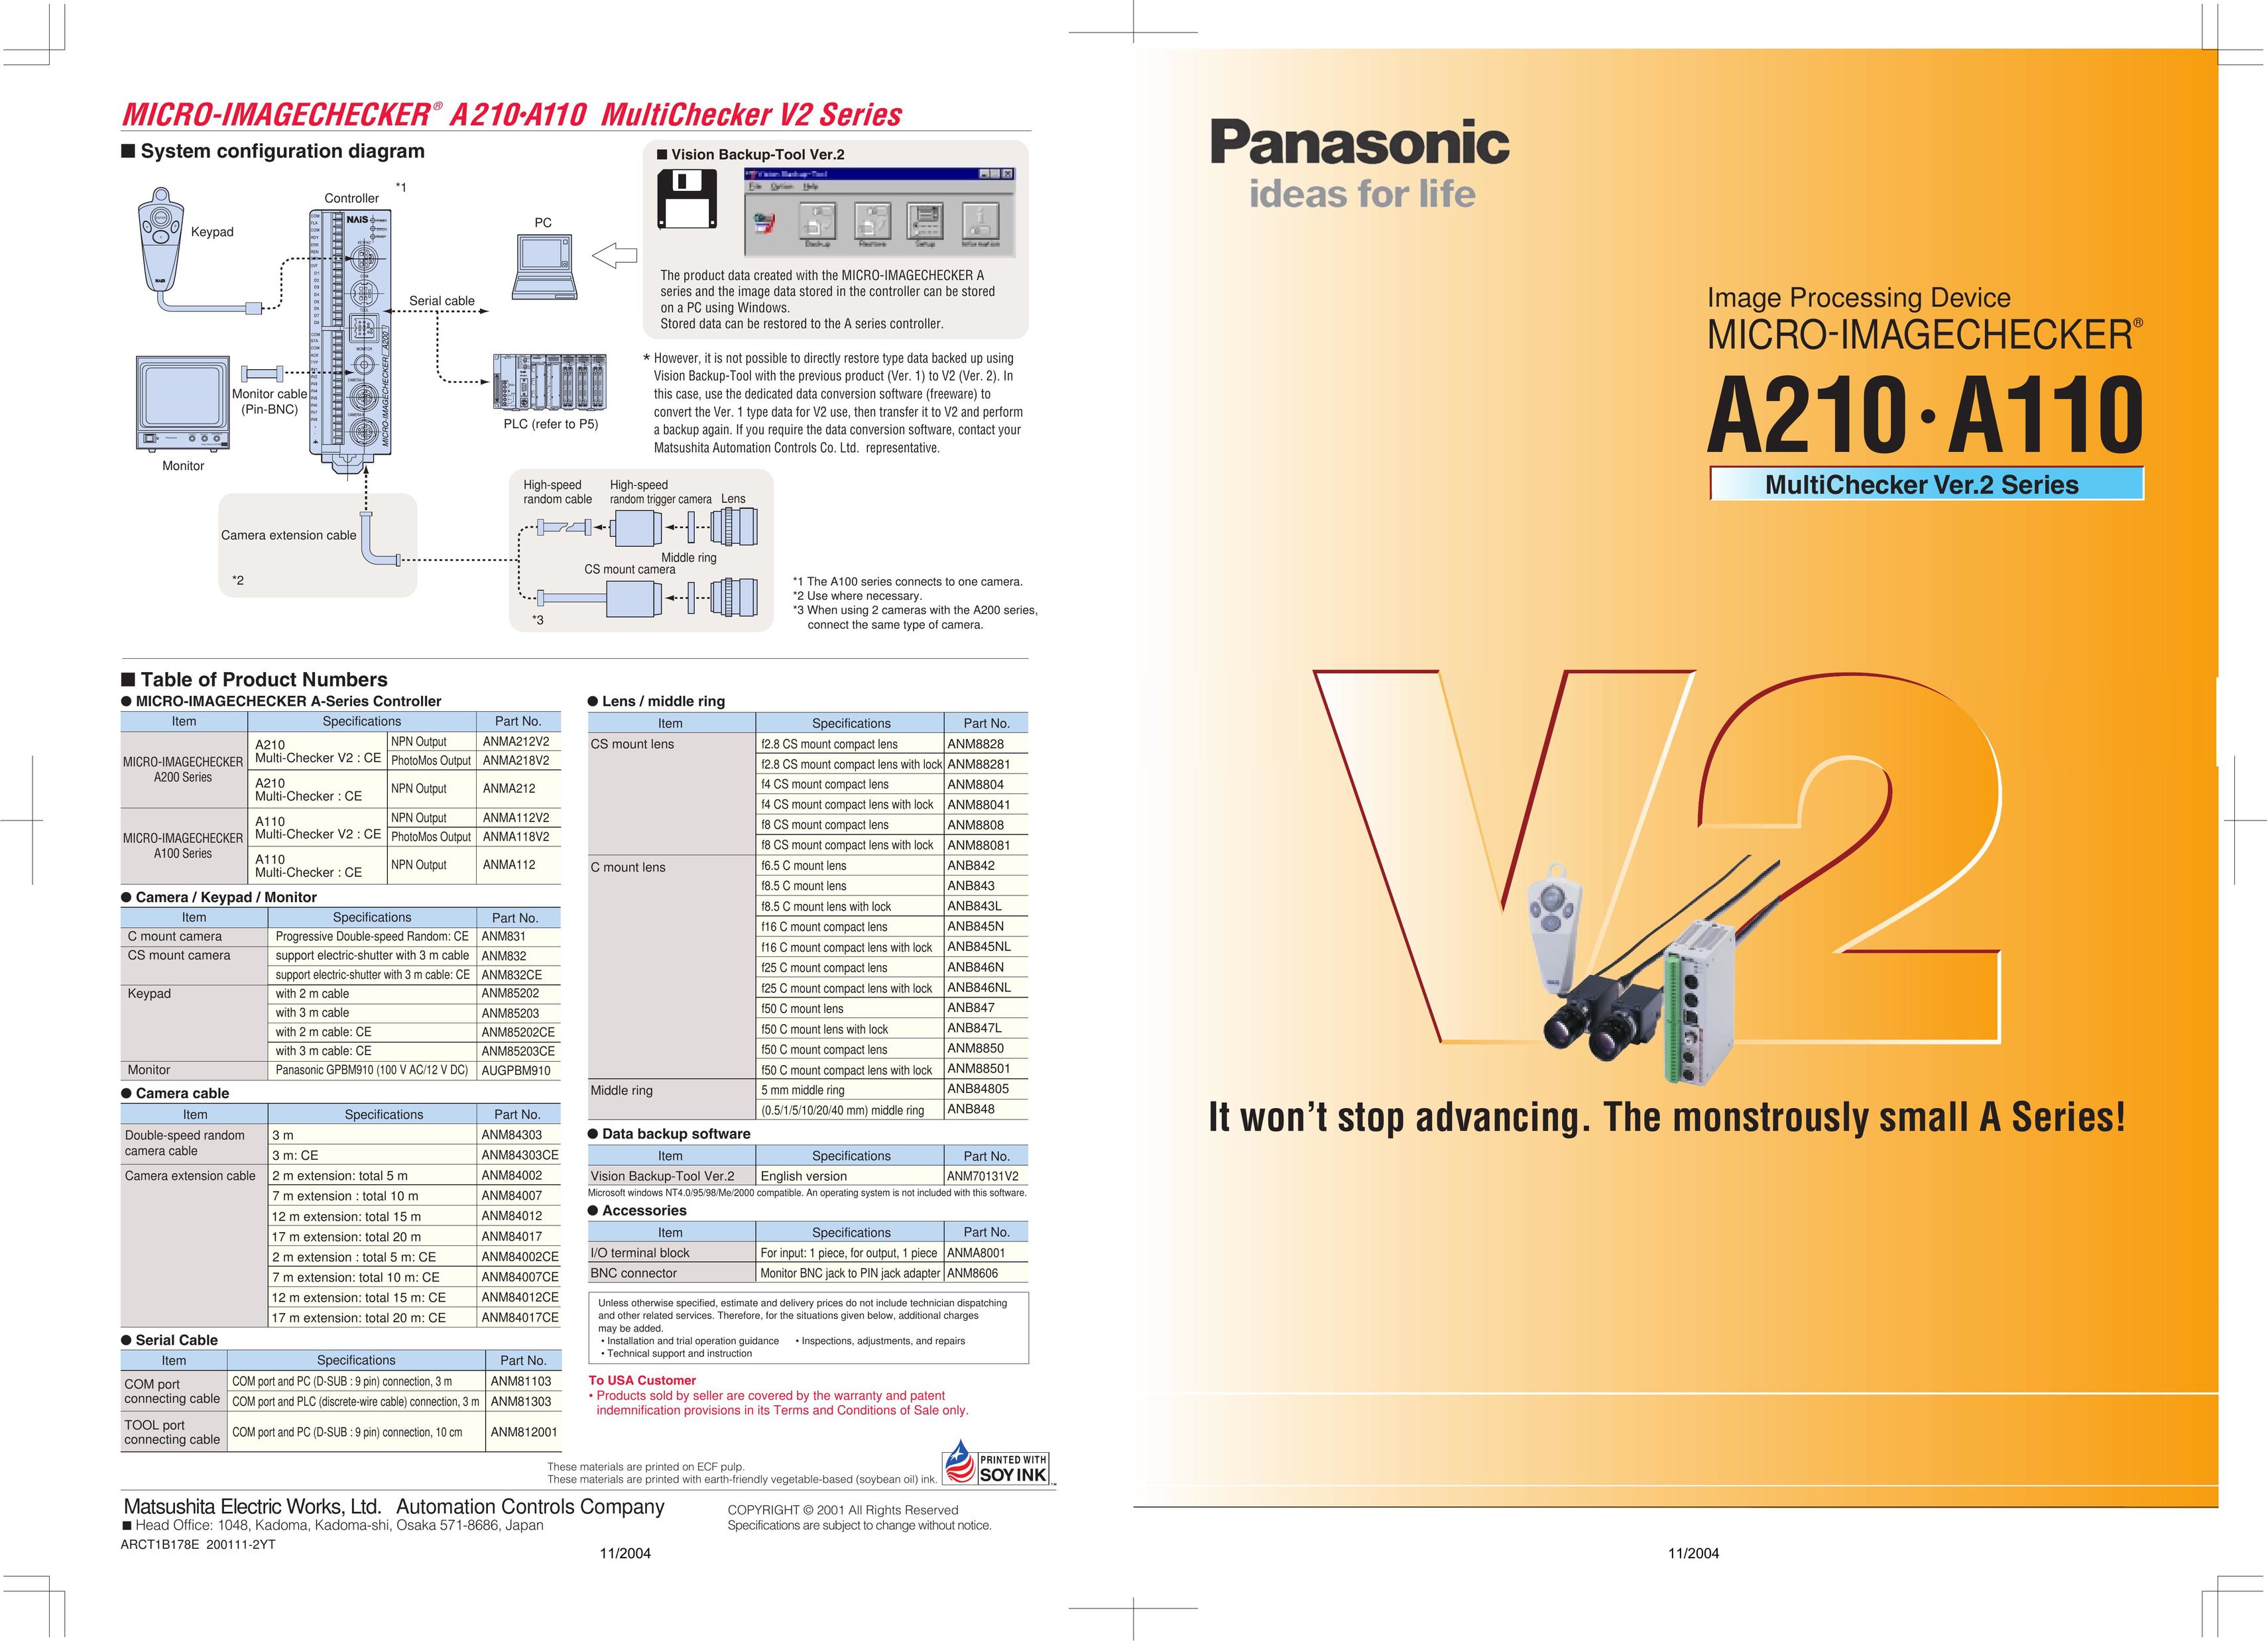 Panasonic A210 Car Speaker User Manual